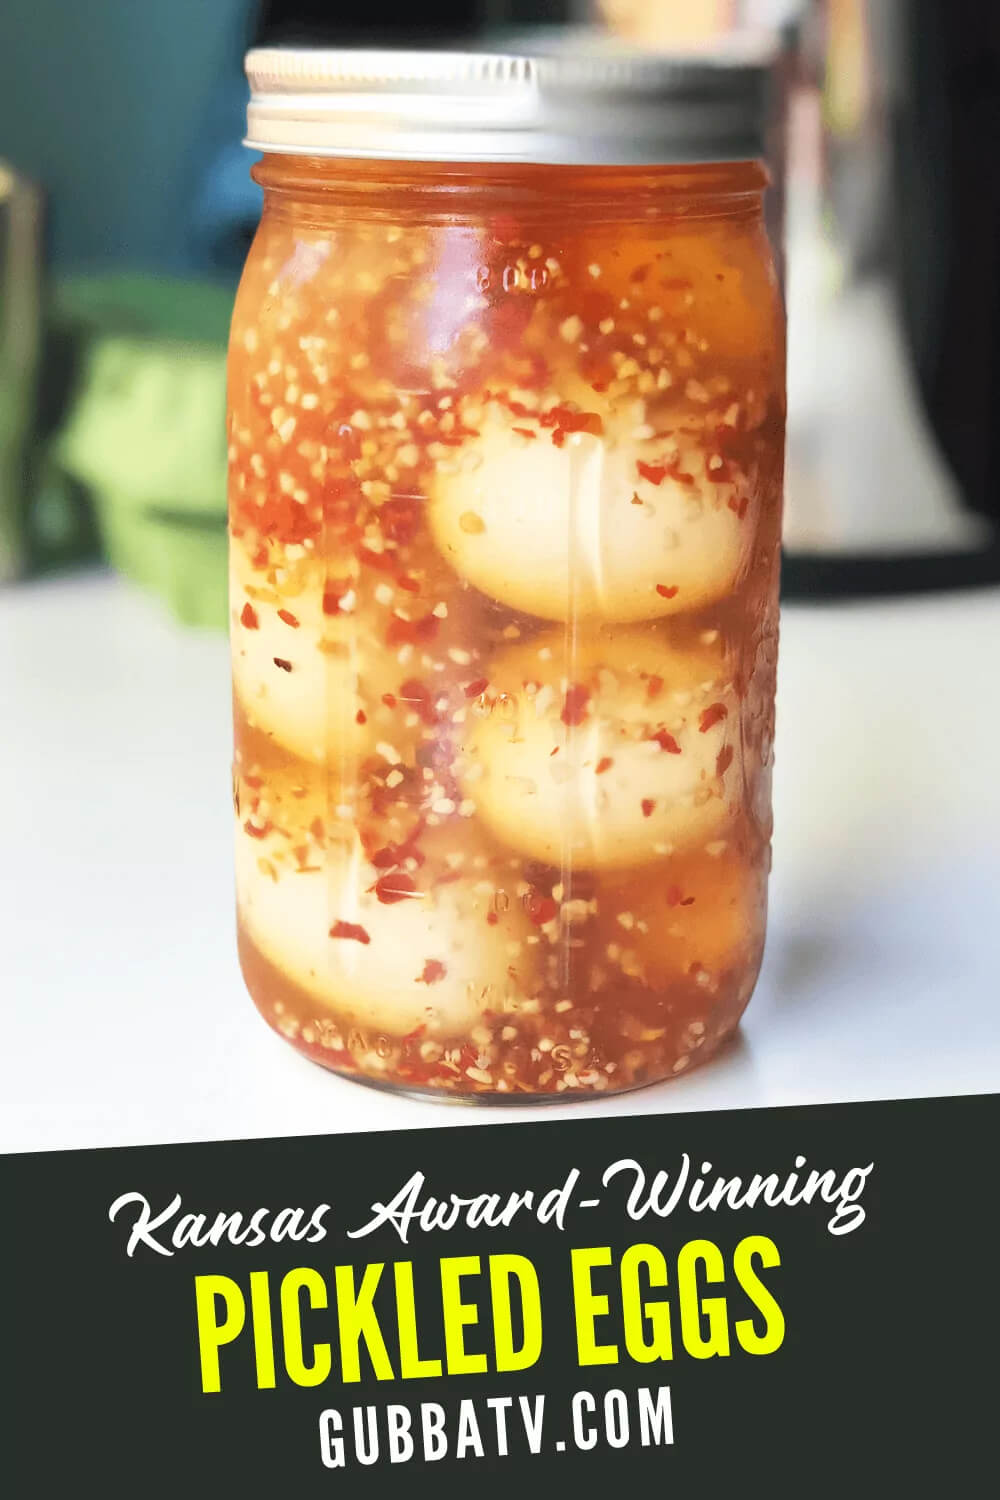 Kansas Award-Winning Pickled Eggs